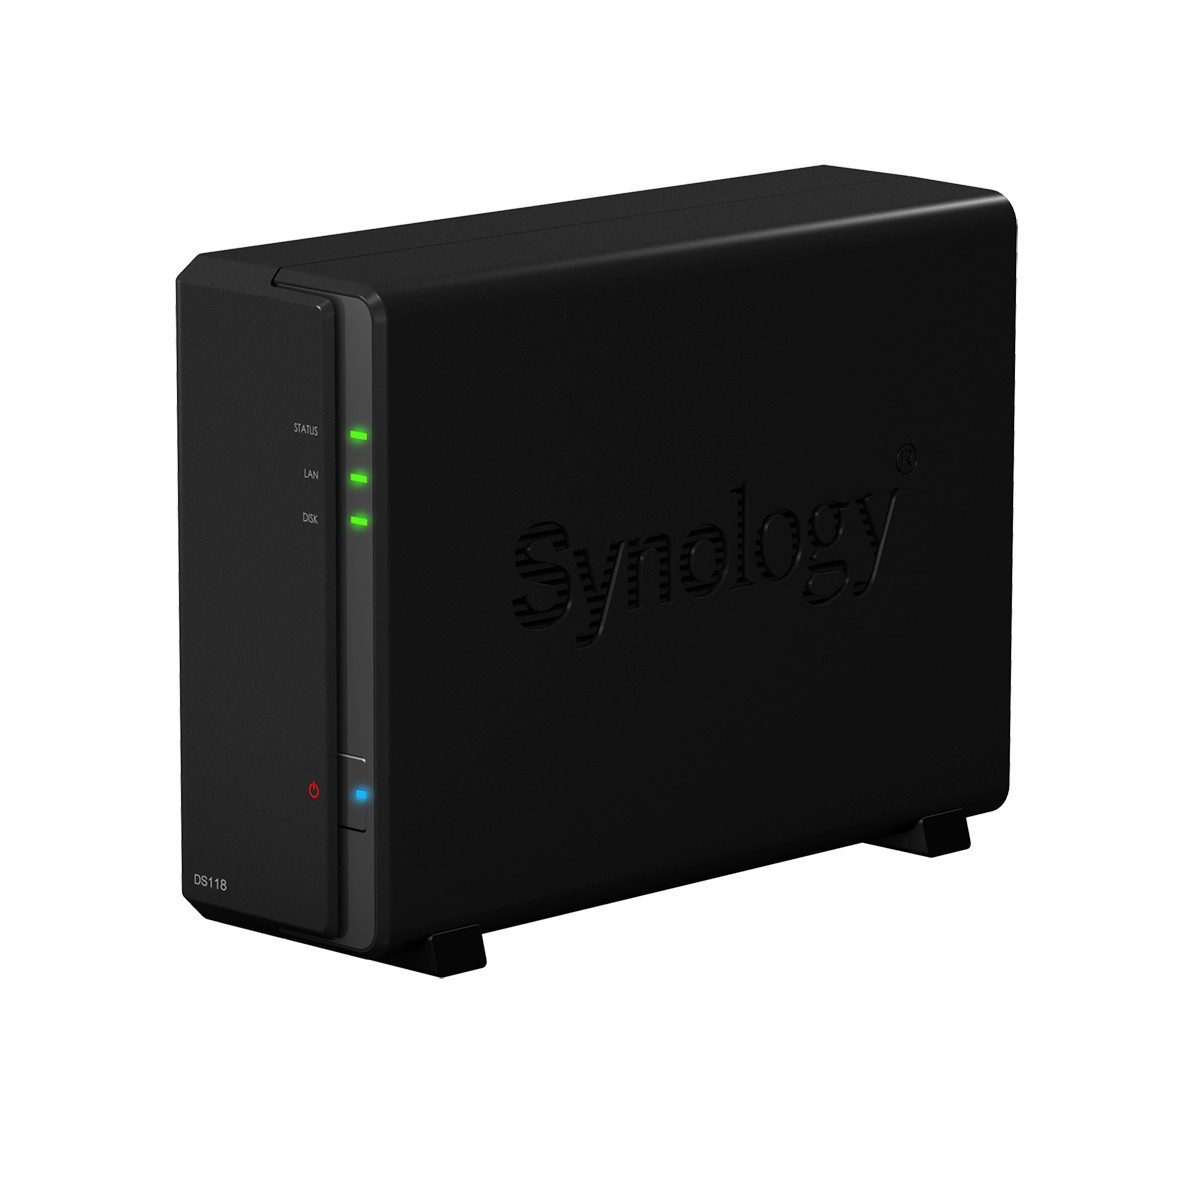 Synology DiskStation DS118 - NAS - Compact - Realtek - RTD1296 - Black